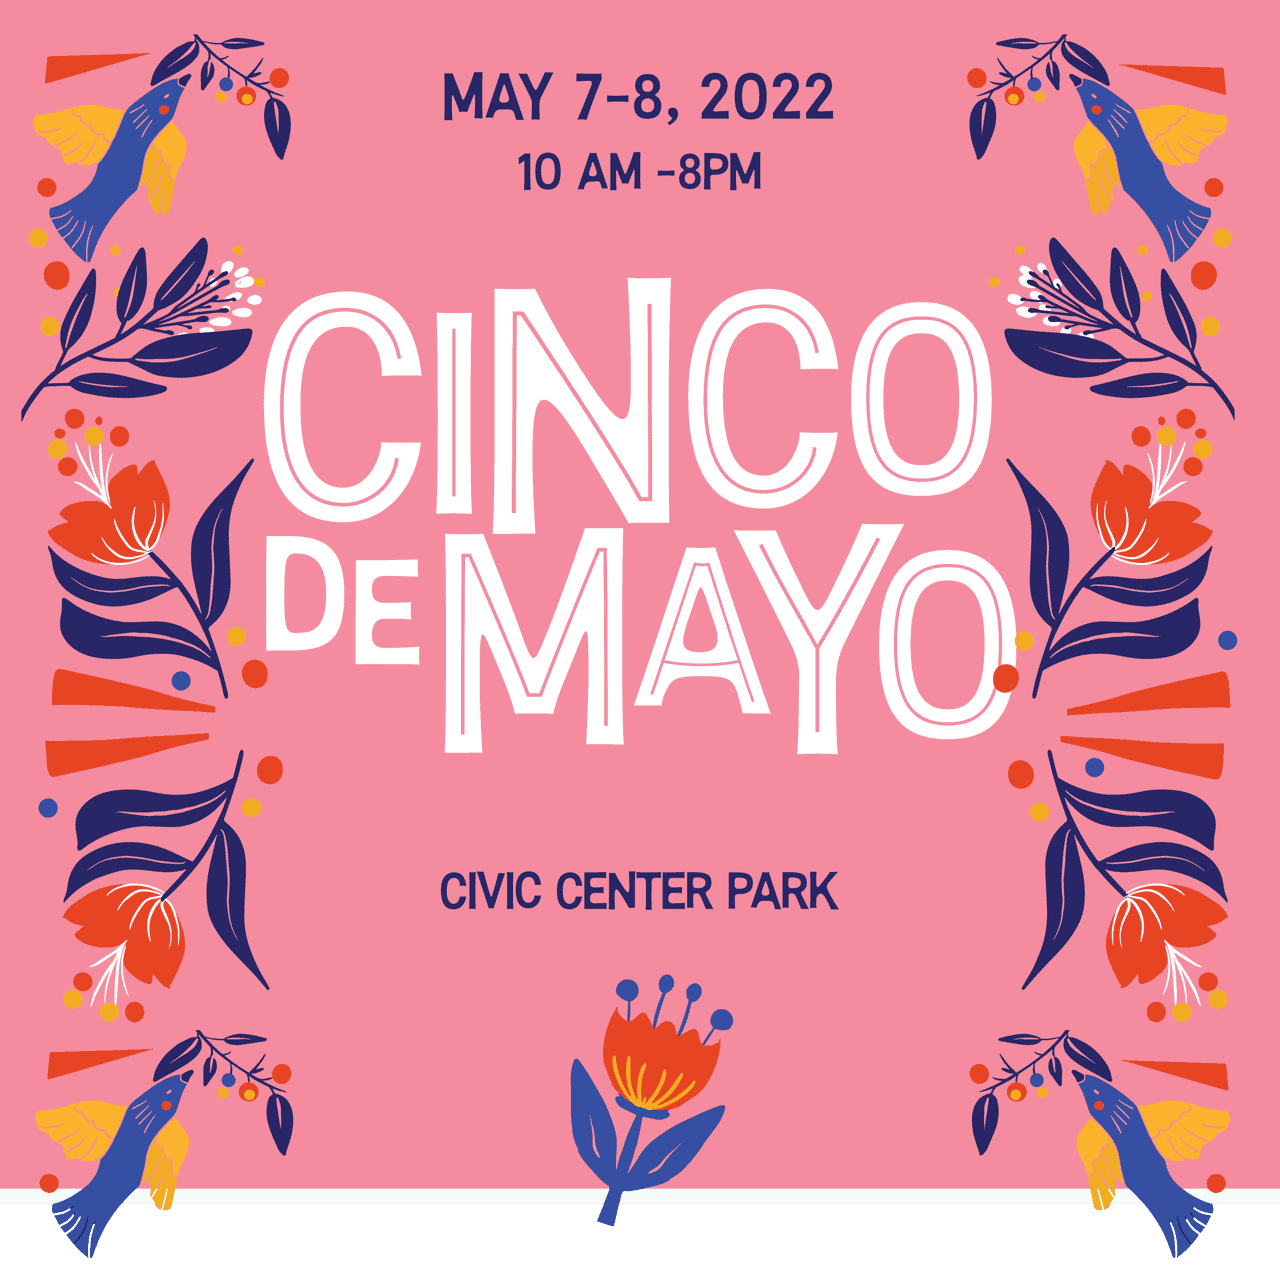 Cinco de Mayo Denver - May 7-8, 2022